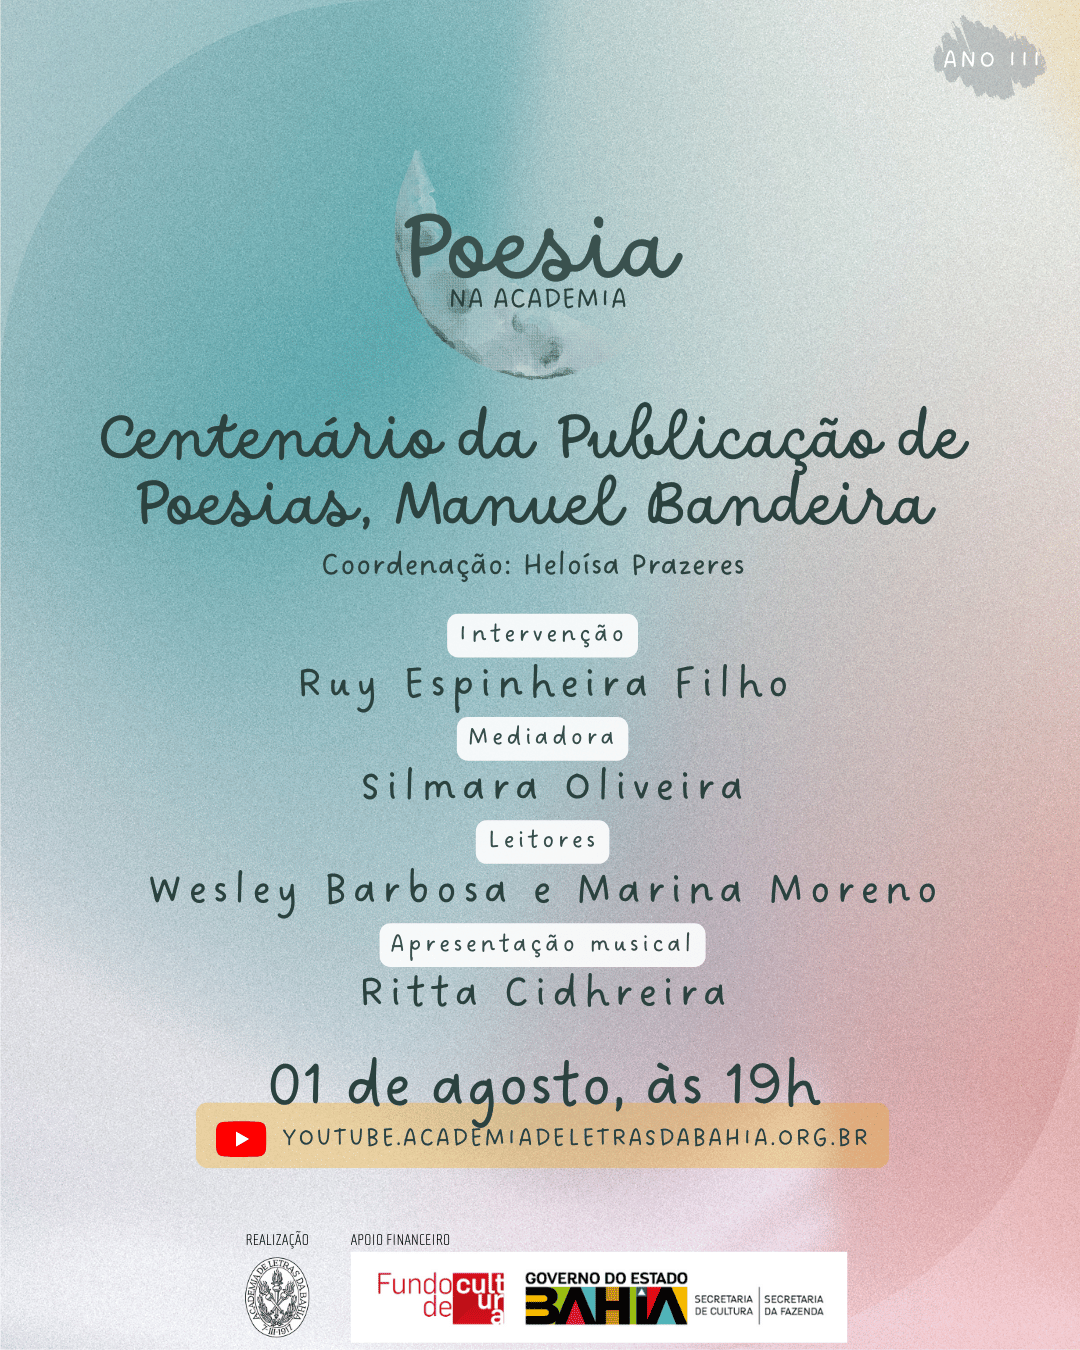 Poesia na Academia discute obra centenária de Manuel Bandeira